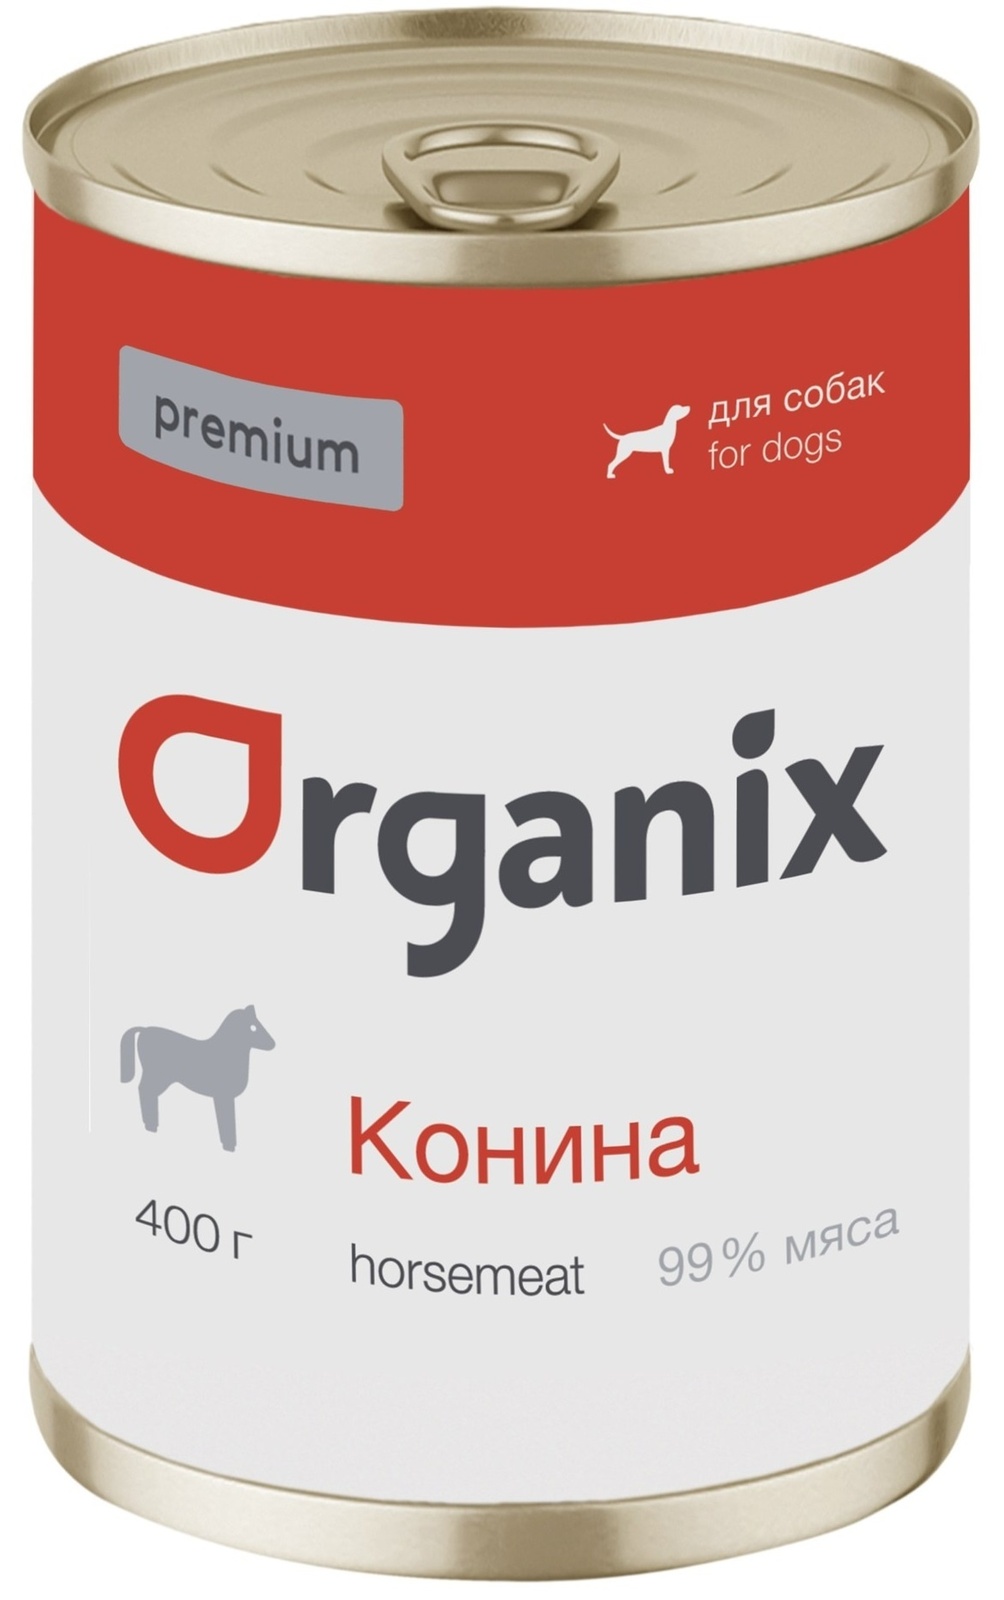 Organix консервы Organix монобелковые премиум консервы для собак, с кониной (100 г) organix консервы organix консервы для собак телятина с зеленой фасолью 100 г